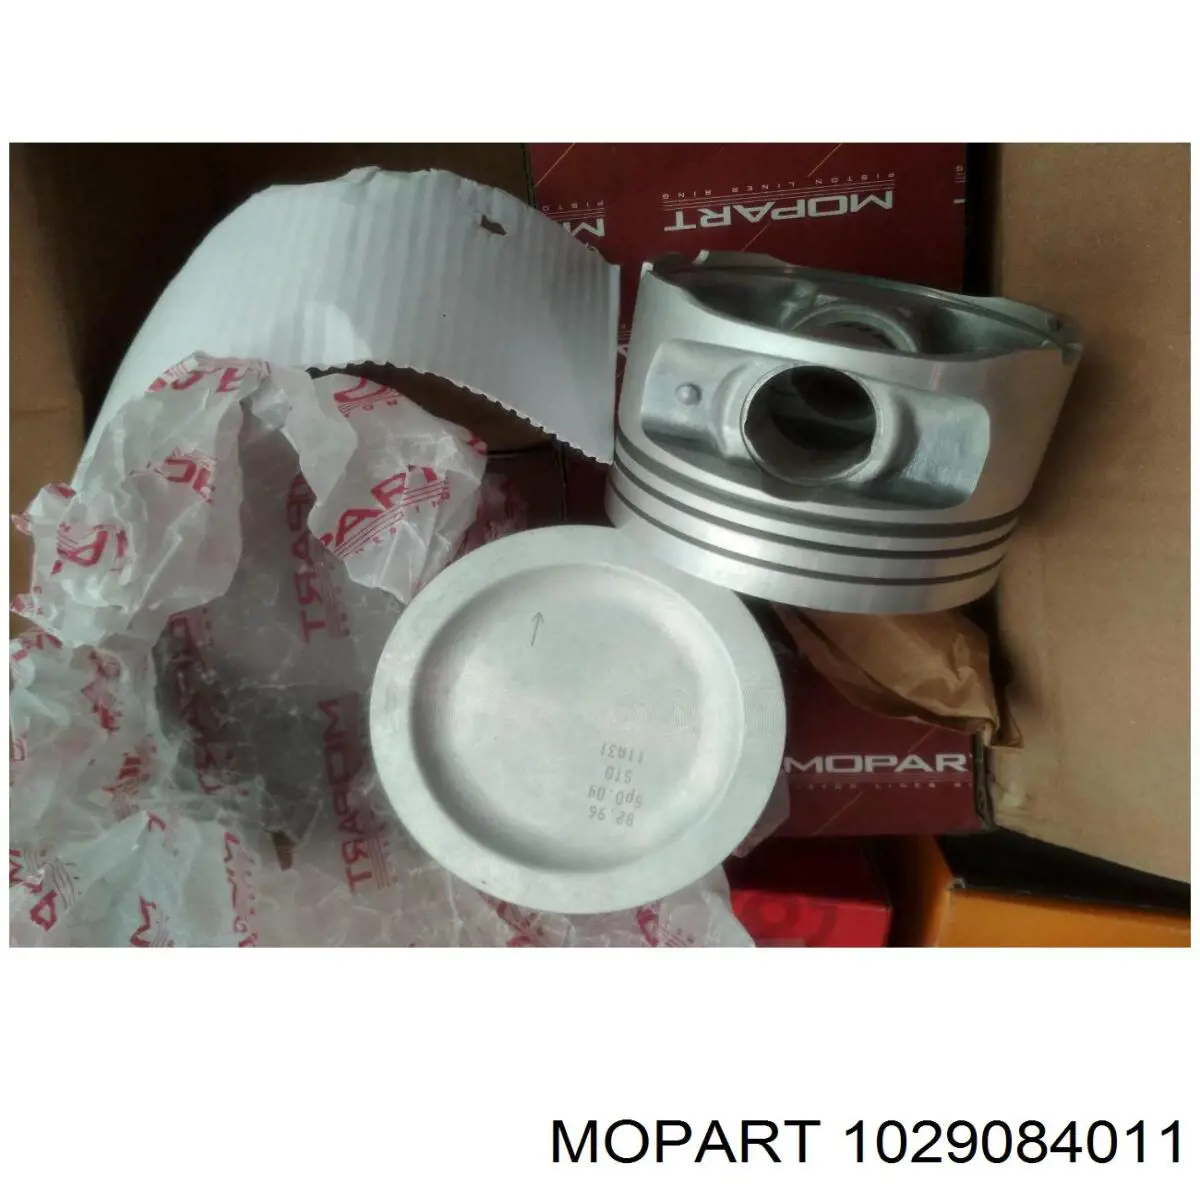 102-90840.11 Mopart поршень в комплекте на 1 цилиндр, 2-й ремонт (+0,50)